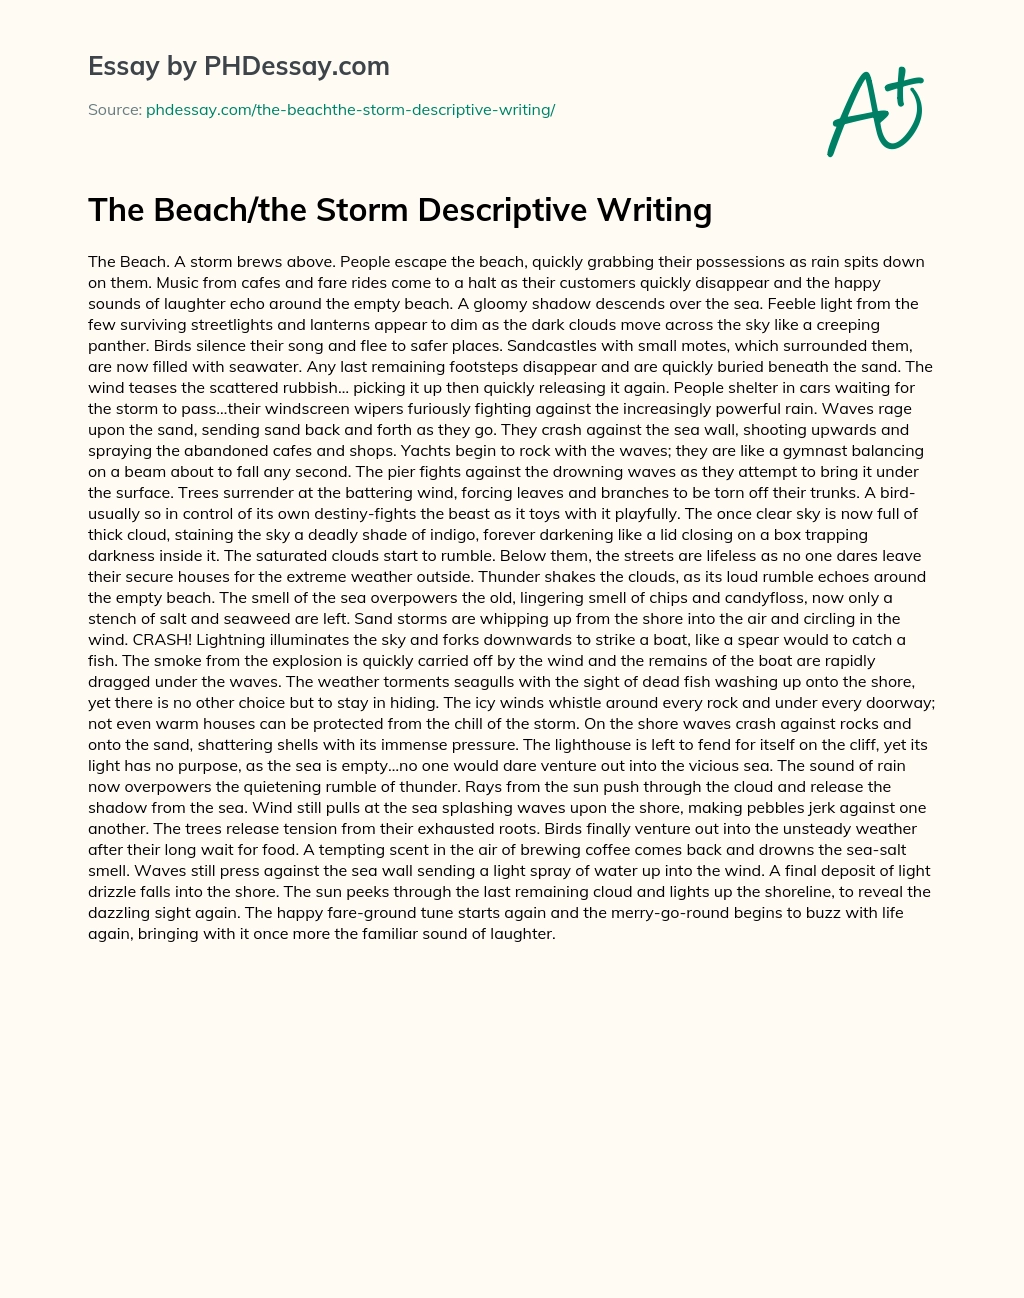 Beach and Storm Descriptive Writing essay